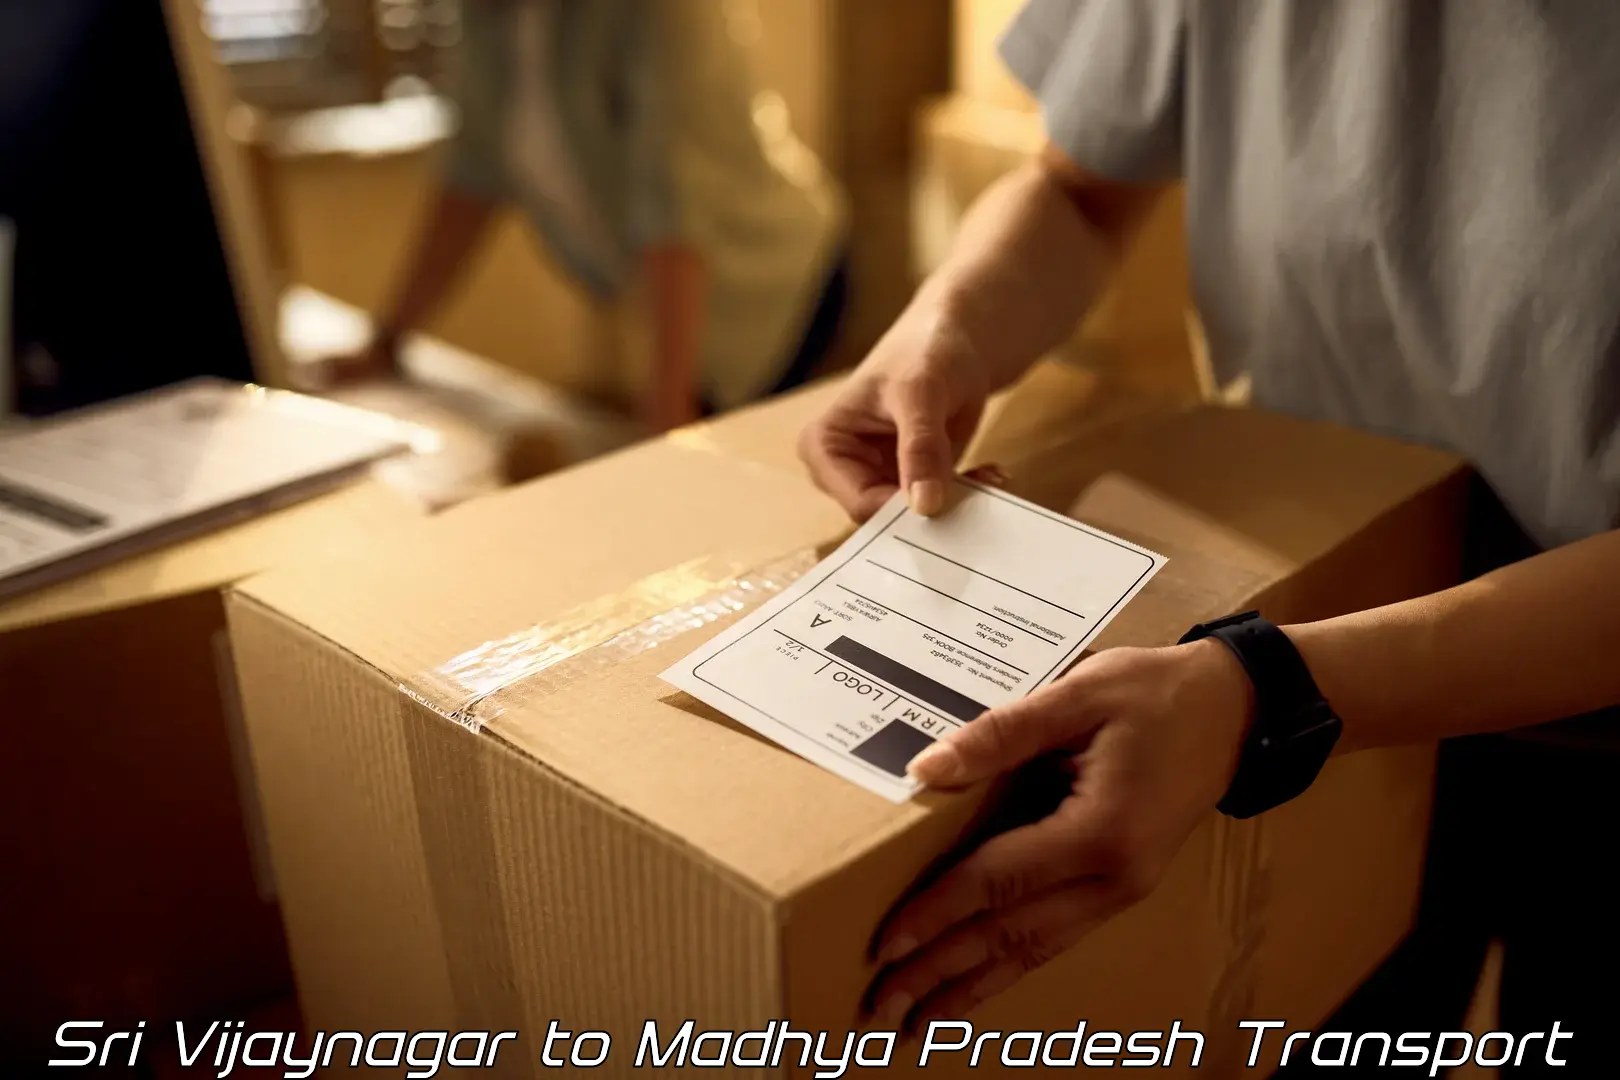 Online transport service Sri Vijaynagar to Mandla